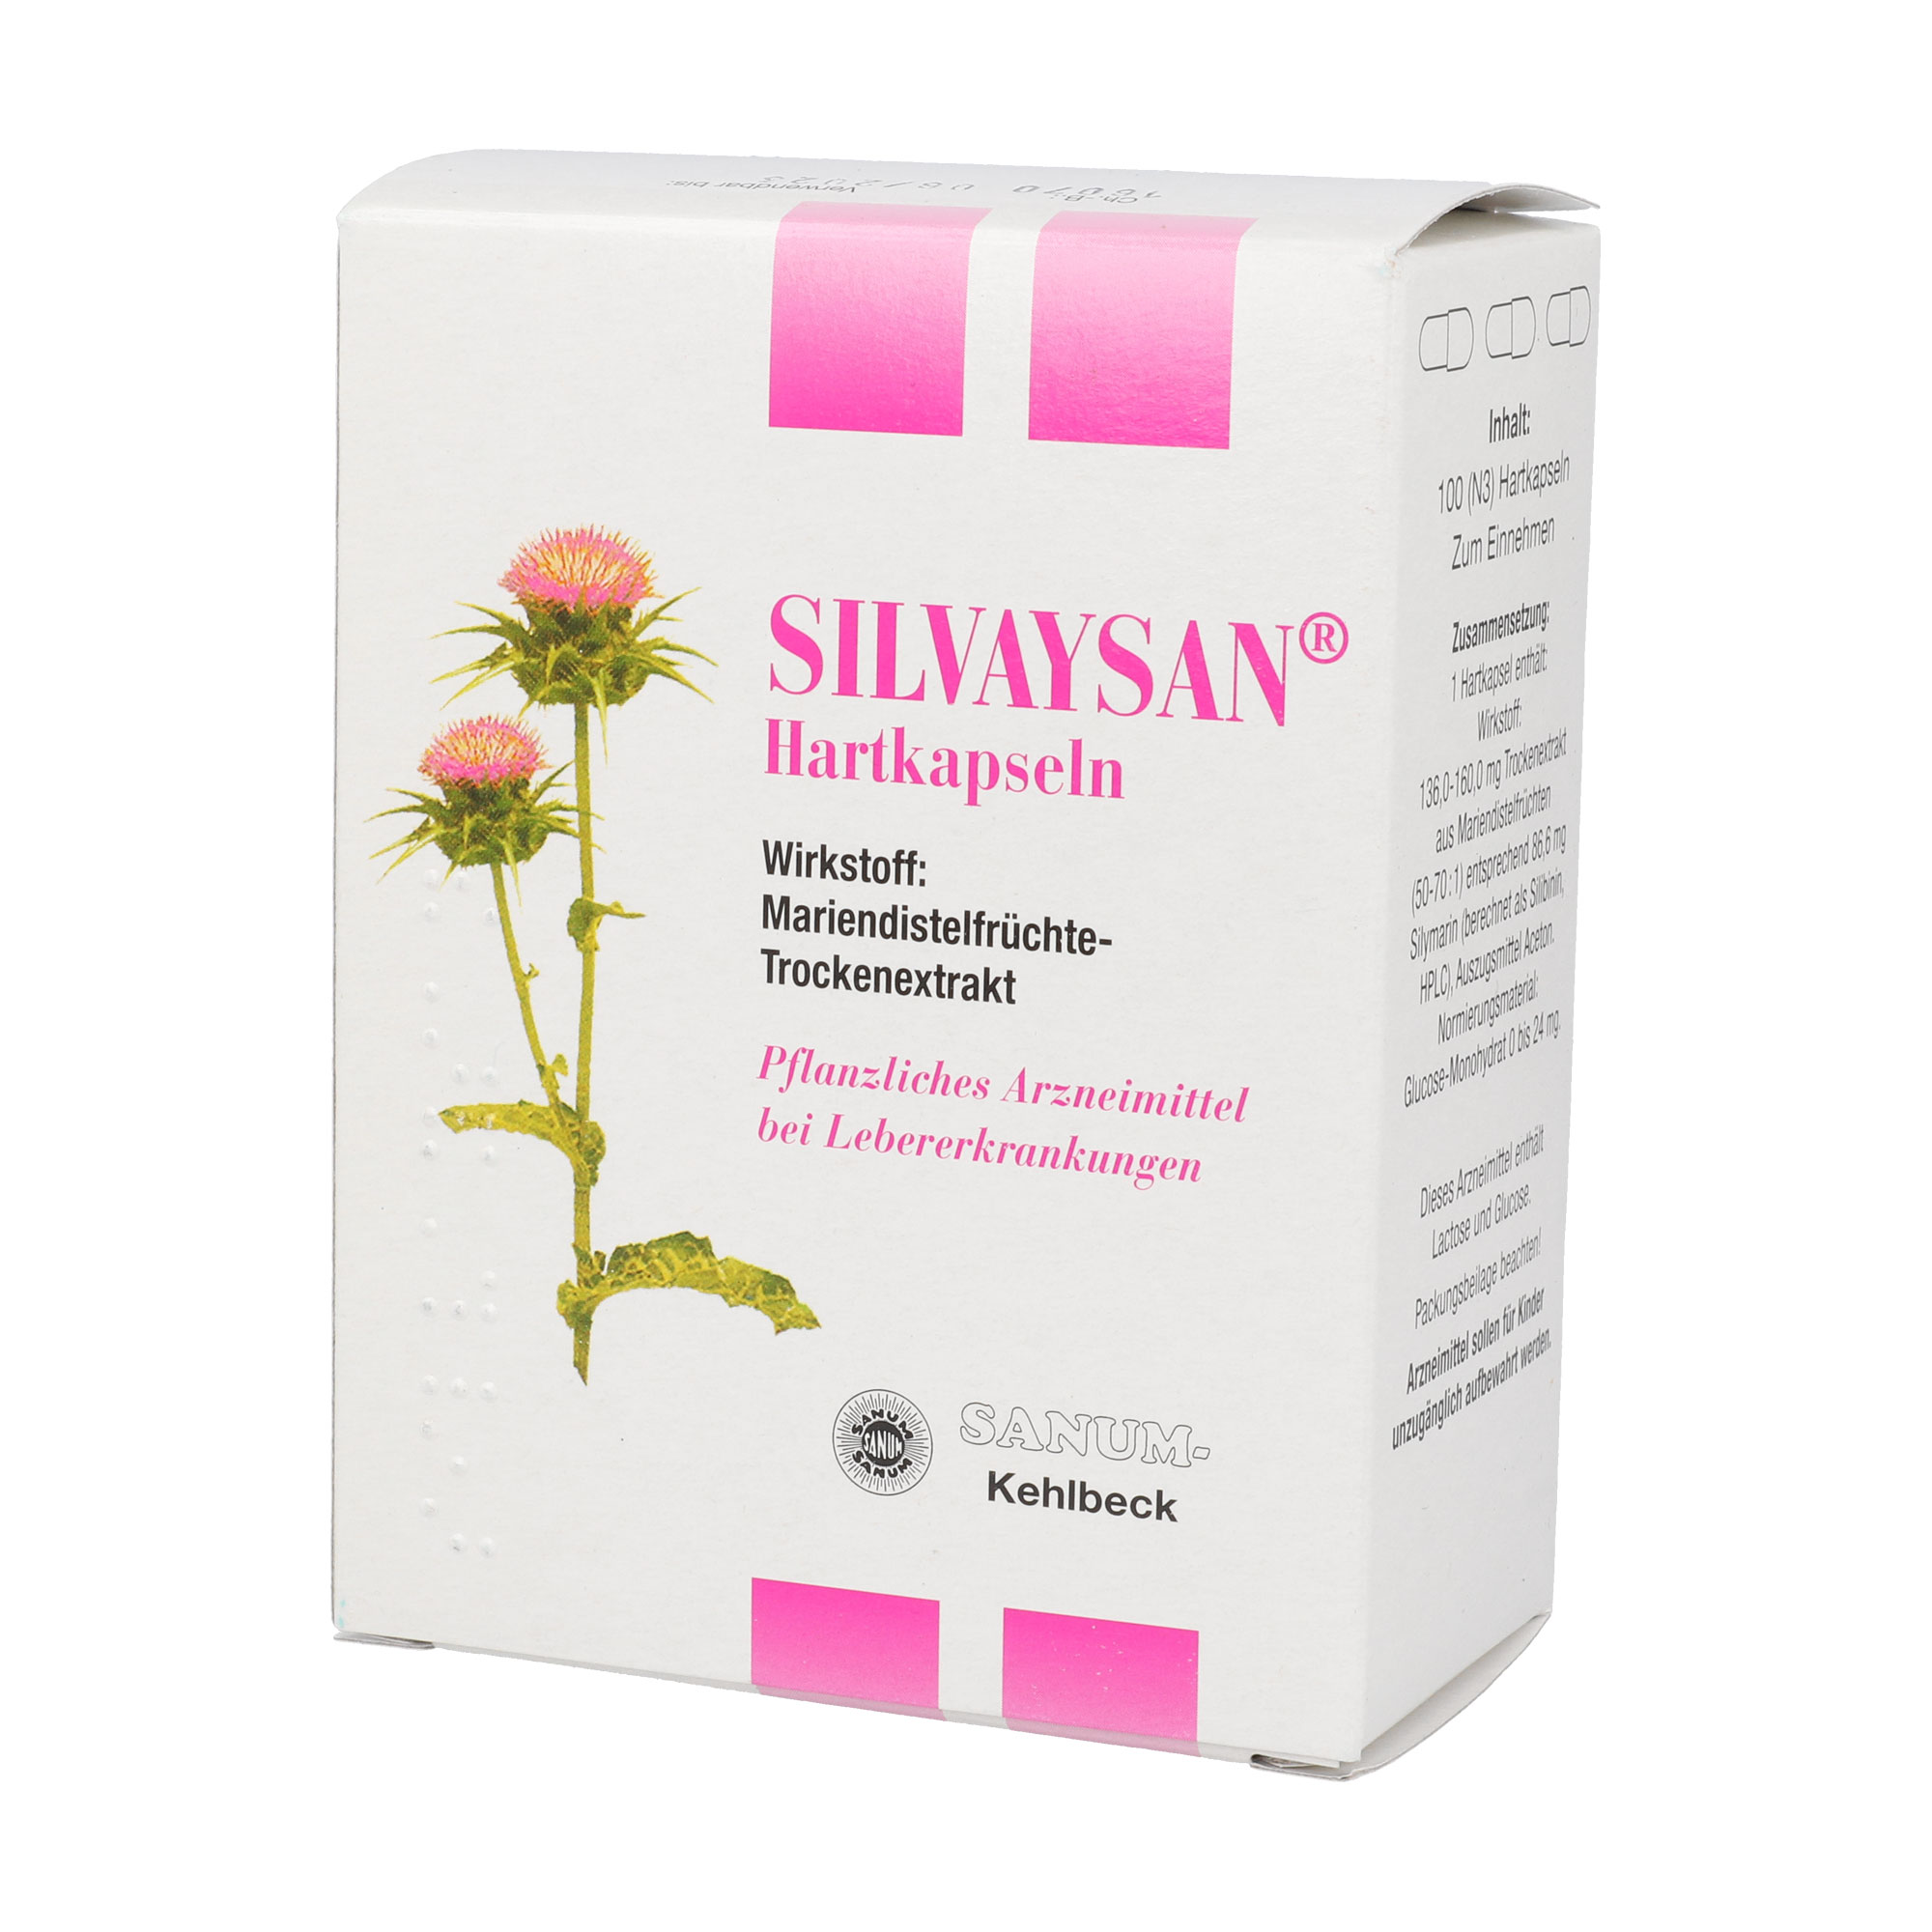 SILVAYSAN® wird unterstützend eingesetzt bei chronischen entzündlichen Lebererkrankungen.